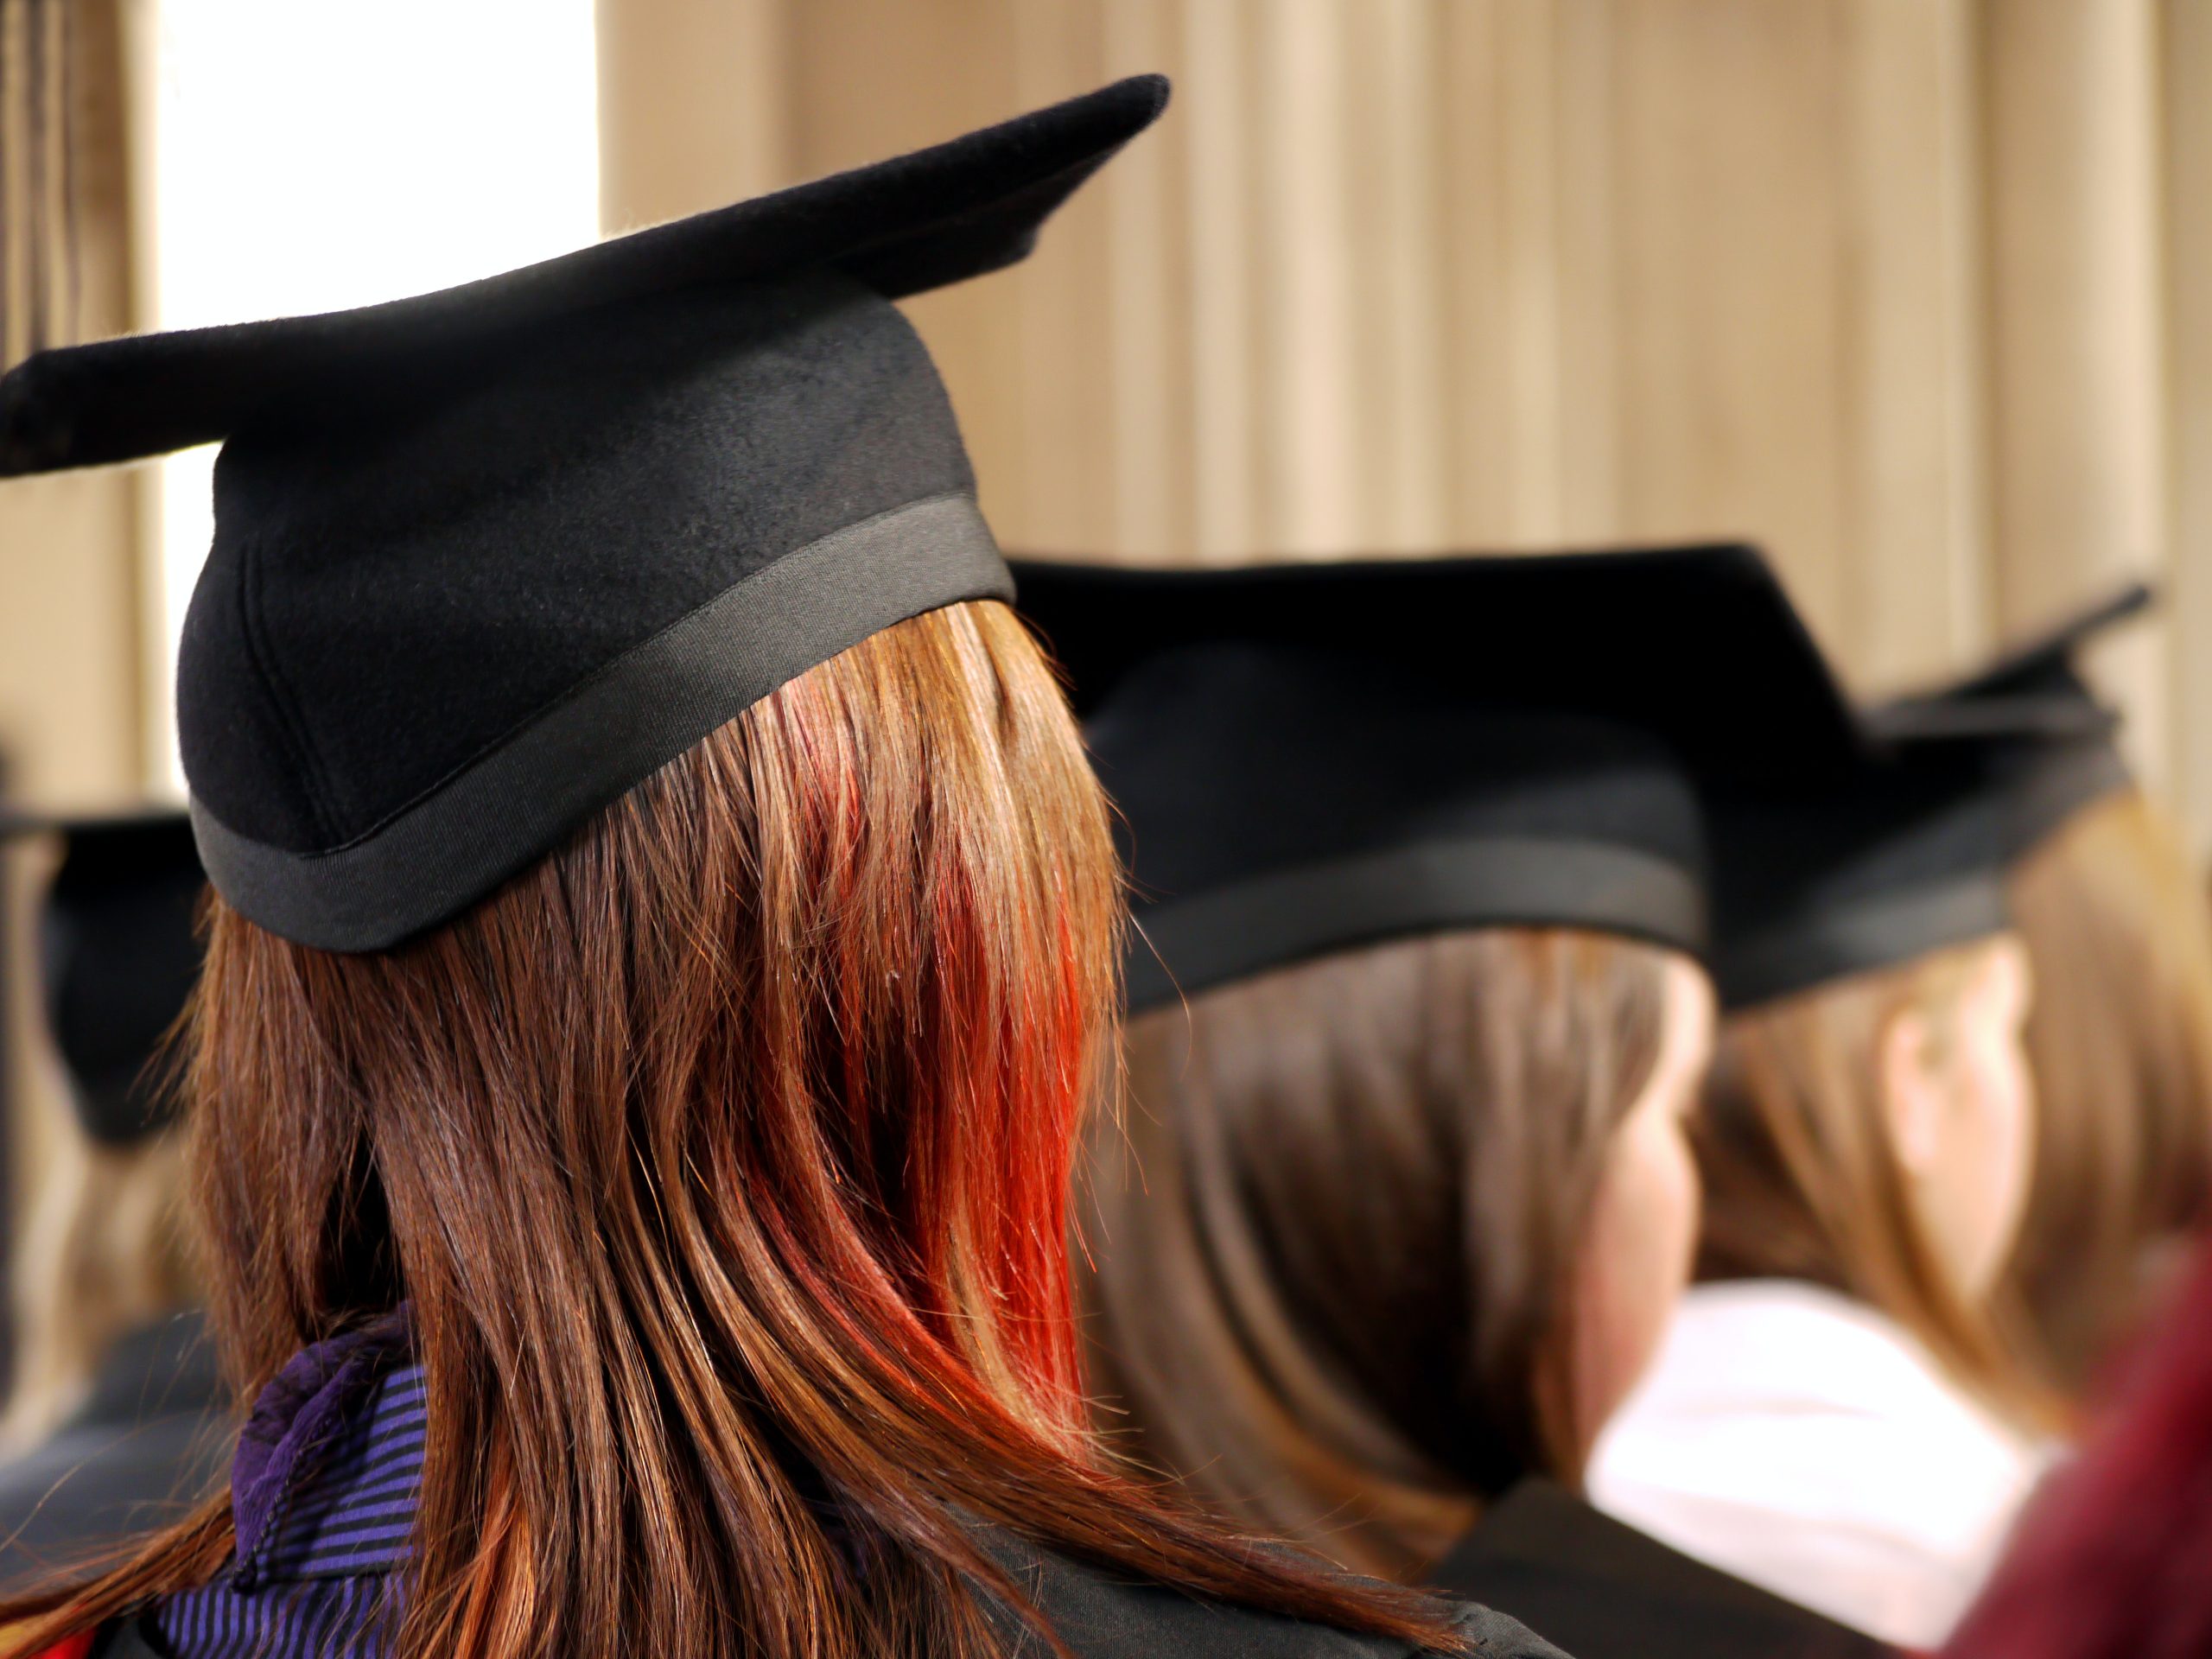 تدفع جامعات الطب تعويضات تصل لـ 10000£ للطلاب كي يقبلوا بالانتقال إلى جامعات أخرى!